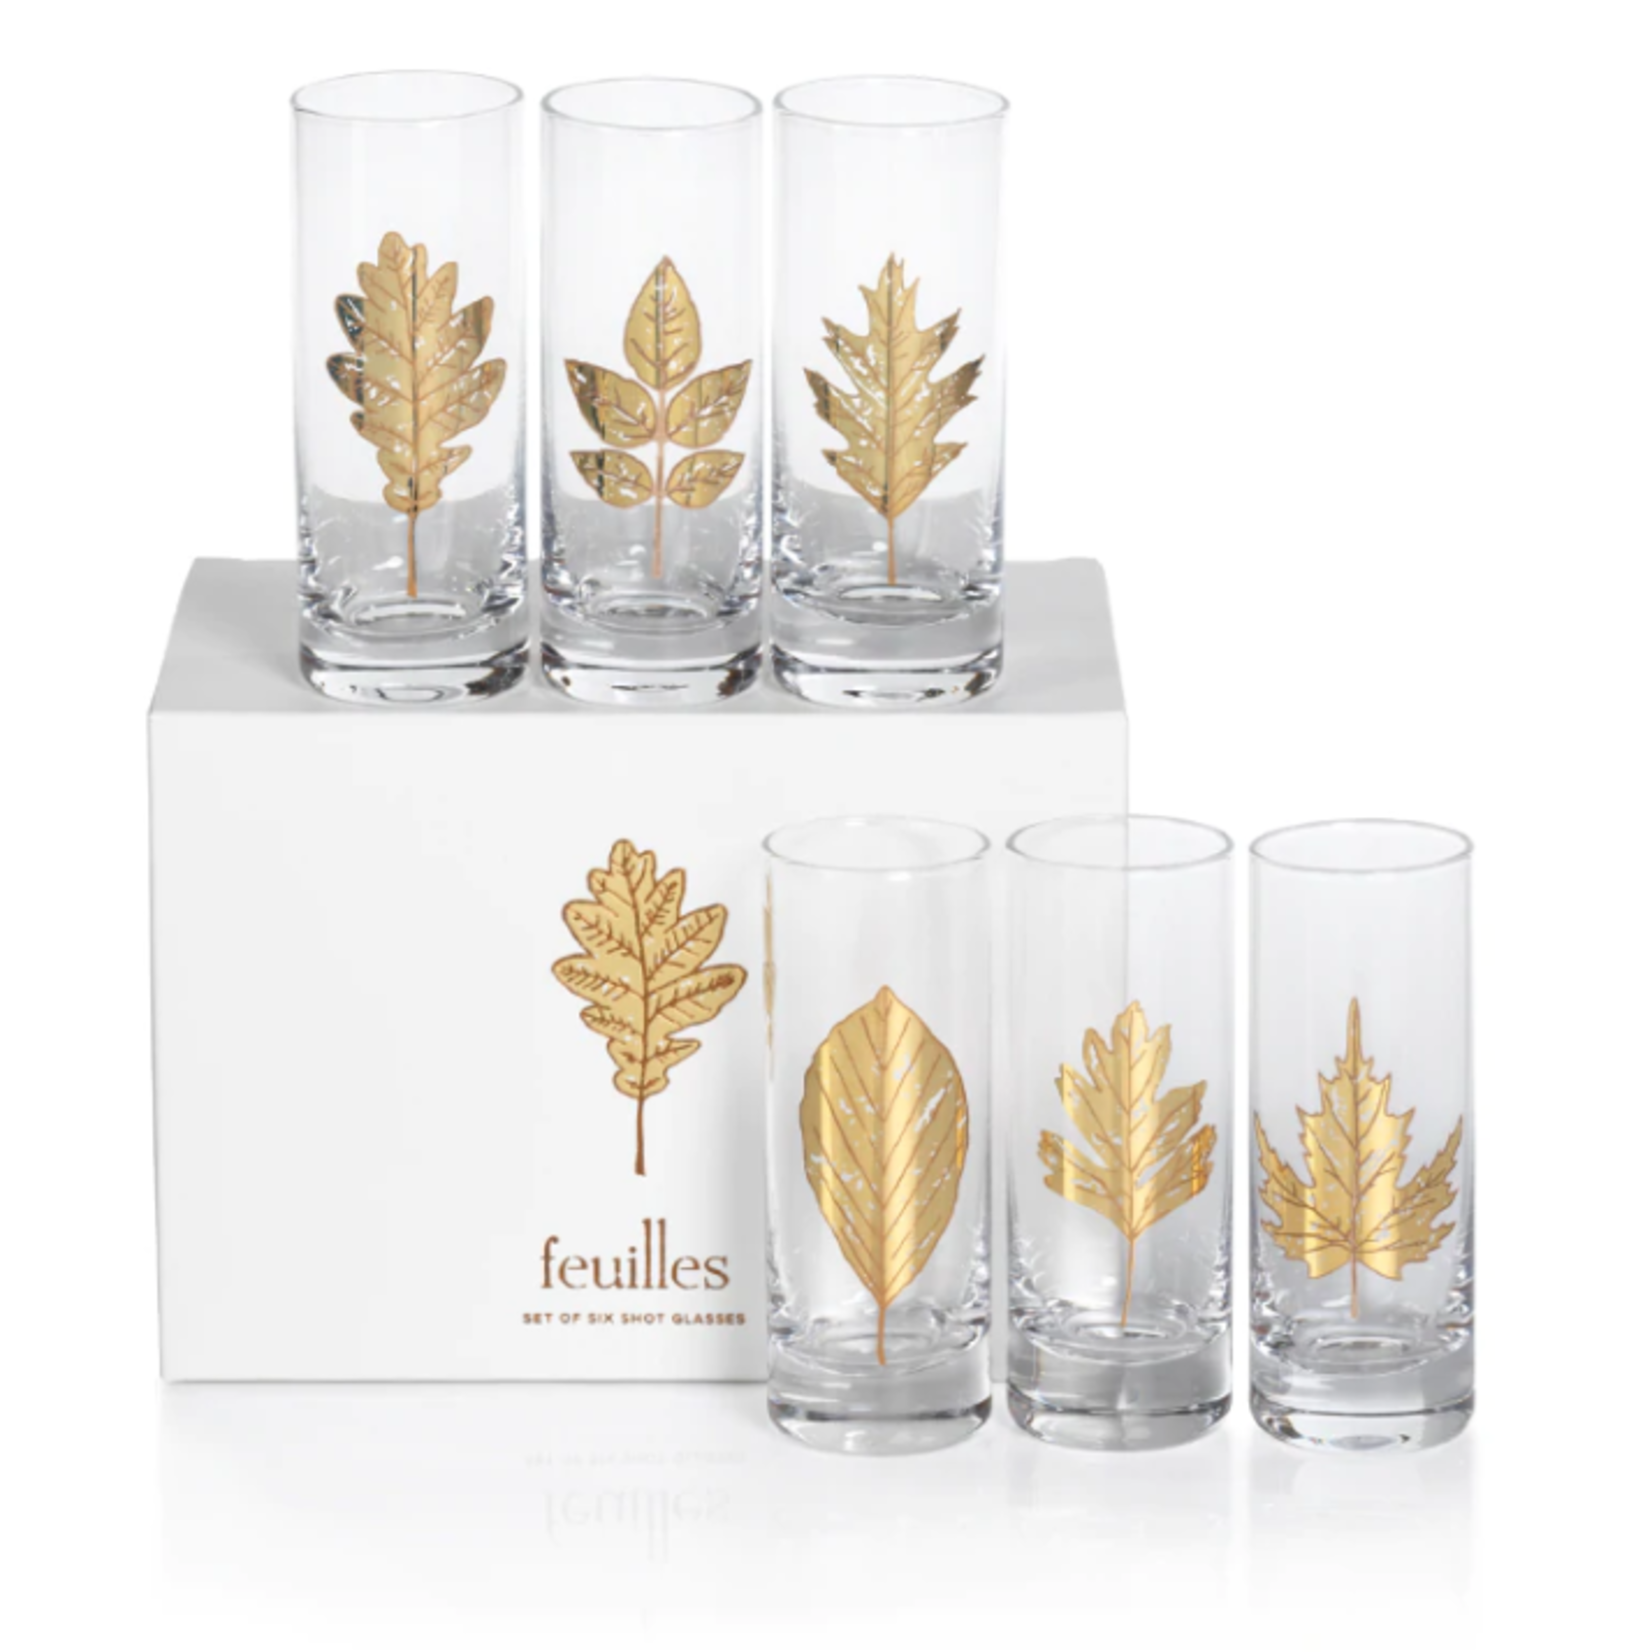 Zodax Feuilles Shot Glass Set of 6